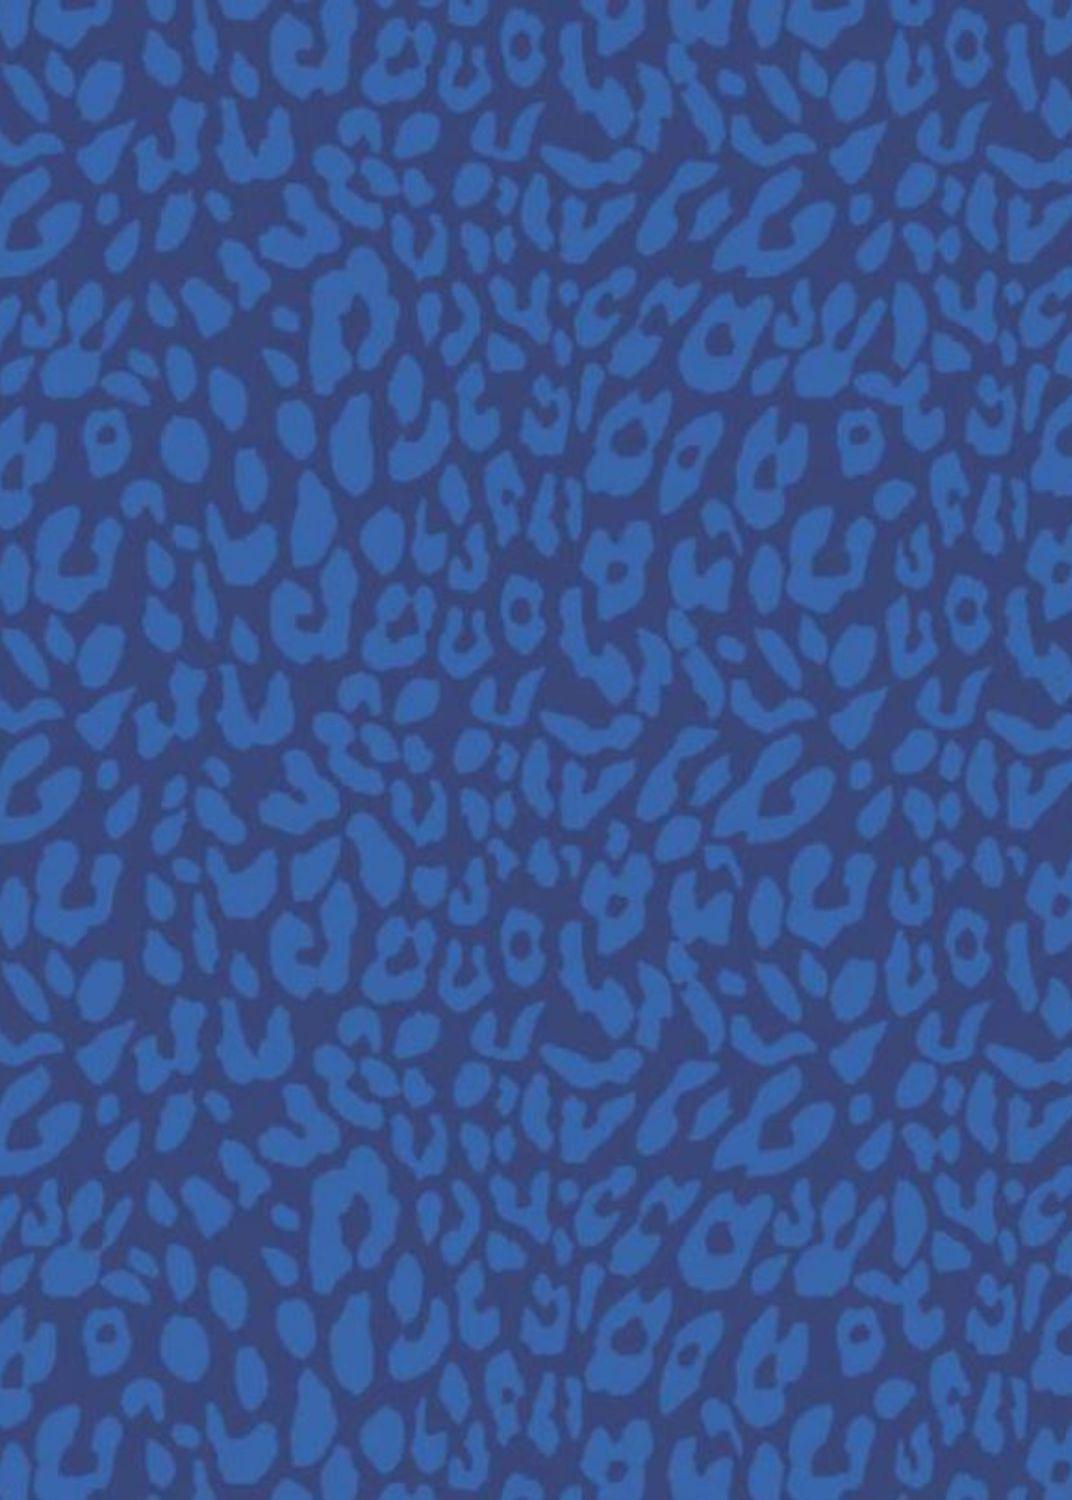 Lucille Dress - Cheetah Blue/Navy